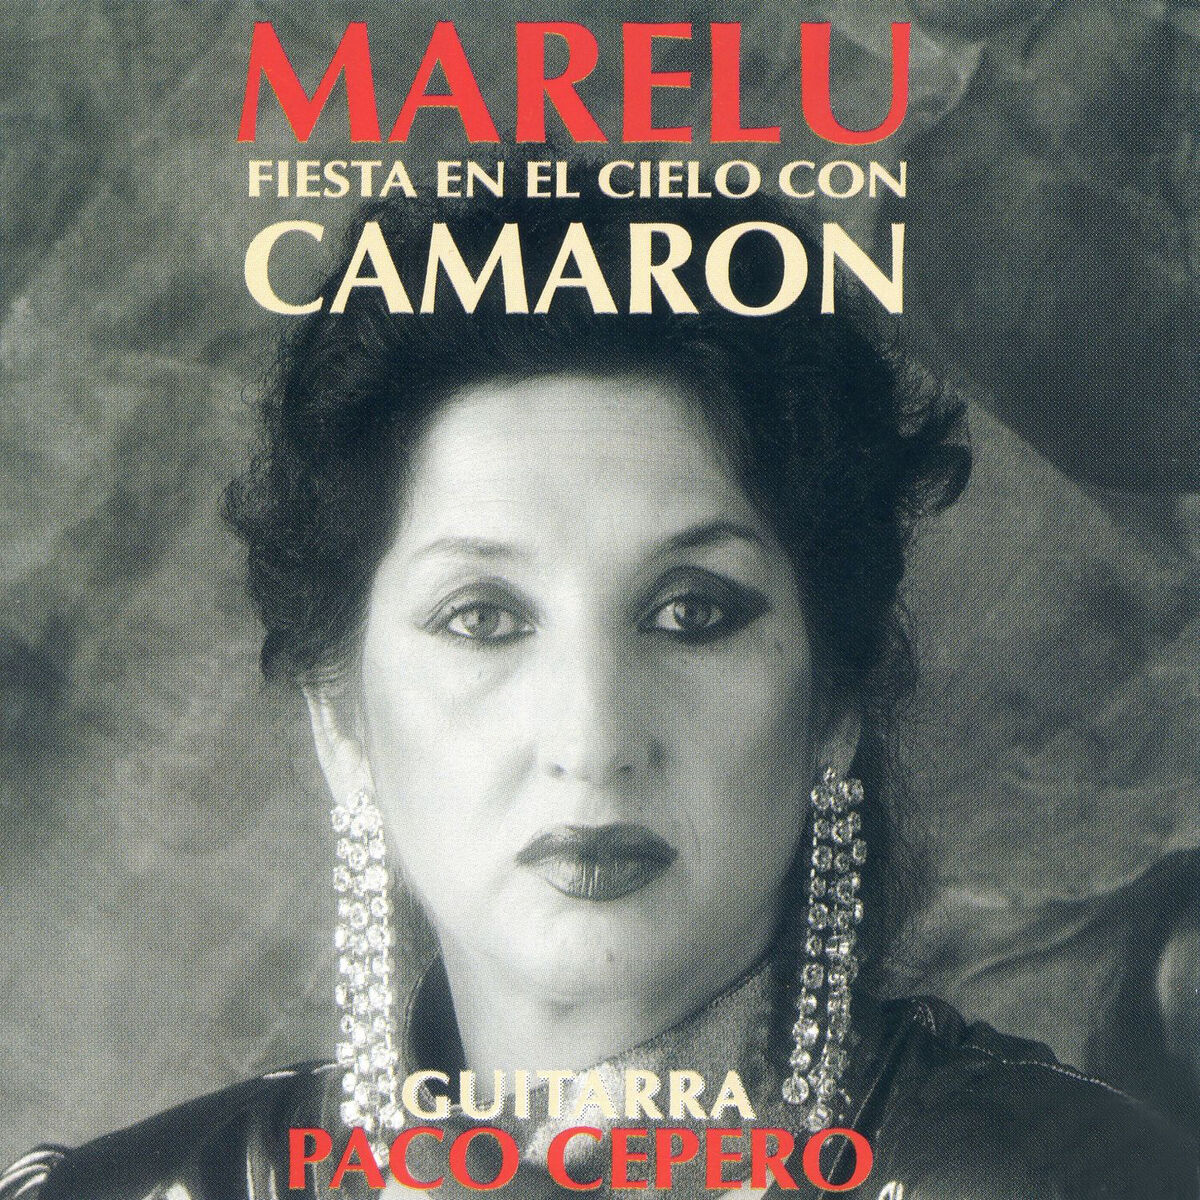 Marelu - 1992 - Fiesta en el Cielo Con Camarón